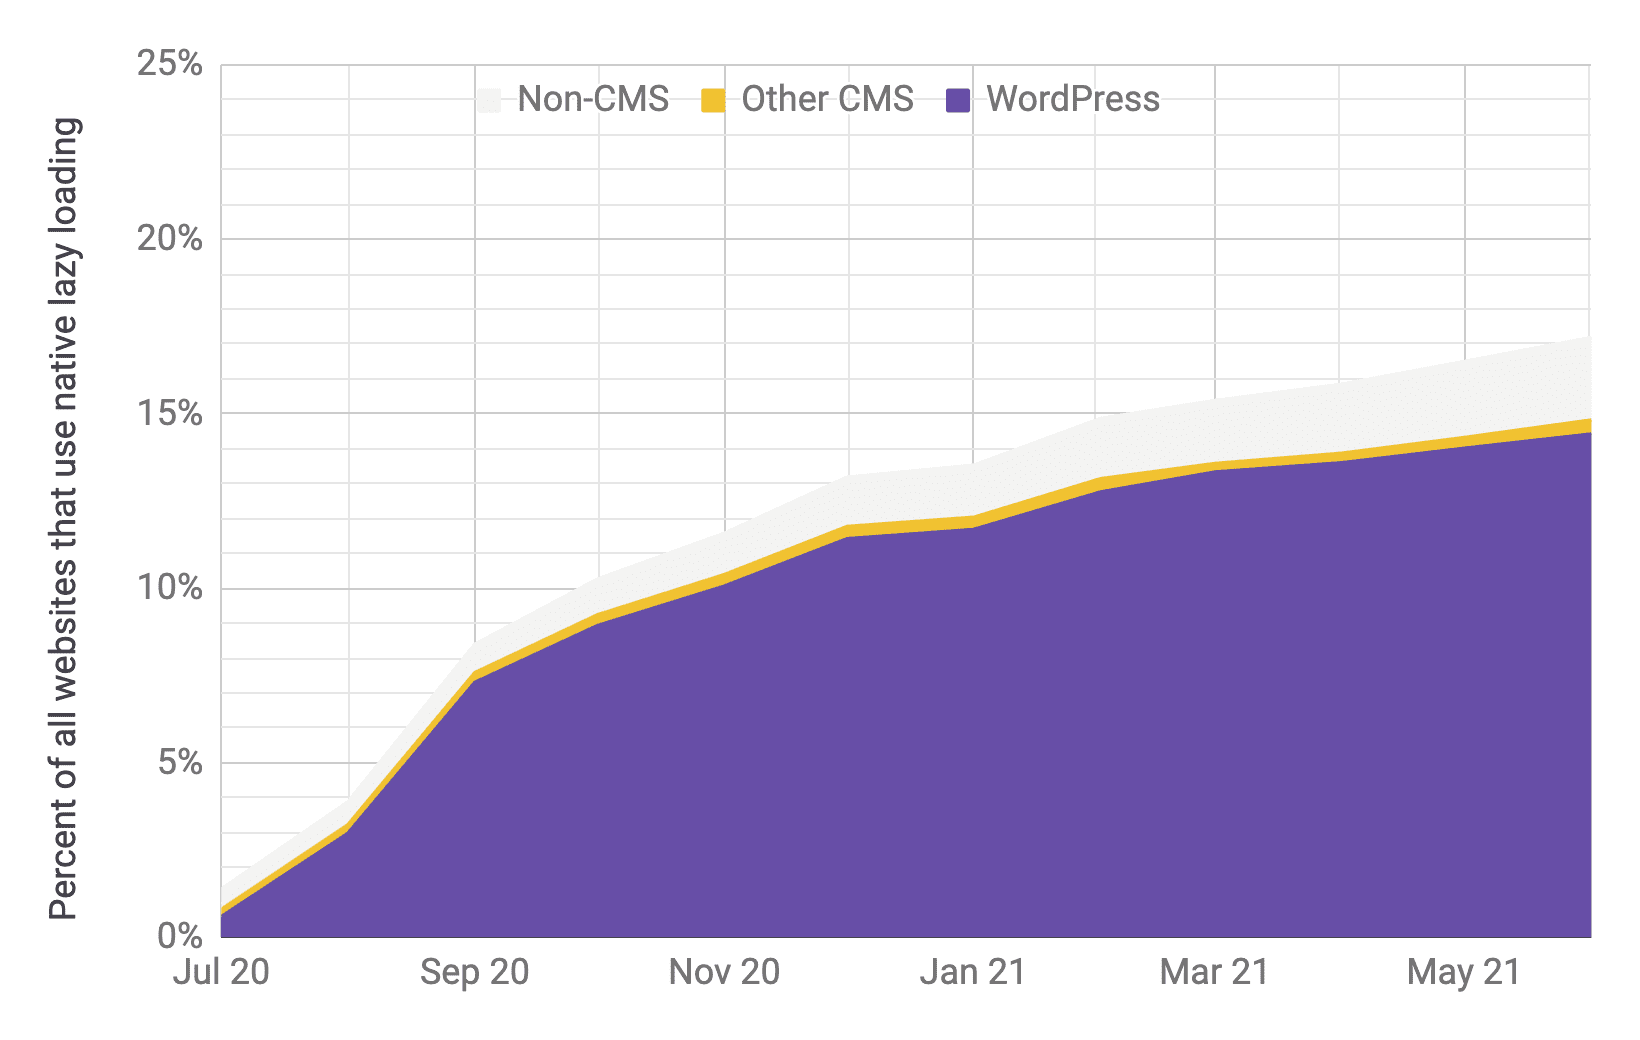 Biểu đồ chuỗi thời gian về tỷ lệ sử dụng phương thức tải từng phần, trong đó WordPress là yếu tố chiếm ưu thế hơn so với các CMS khác và các CMS không phải CMS, với tỷ lệ tương tự như biểu đồ trước. Từ tháng 7 năm 2020 đến tháng 6 năm 2021, tổng tỷ lệ sử dụng đã tăng nhanh từ 1% lên 17%.